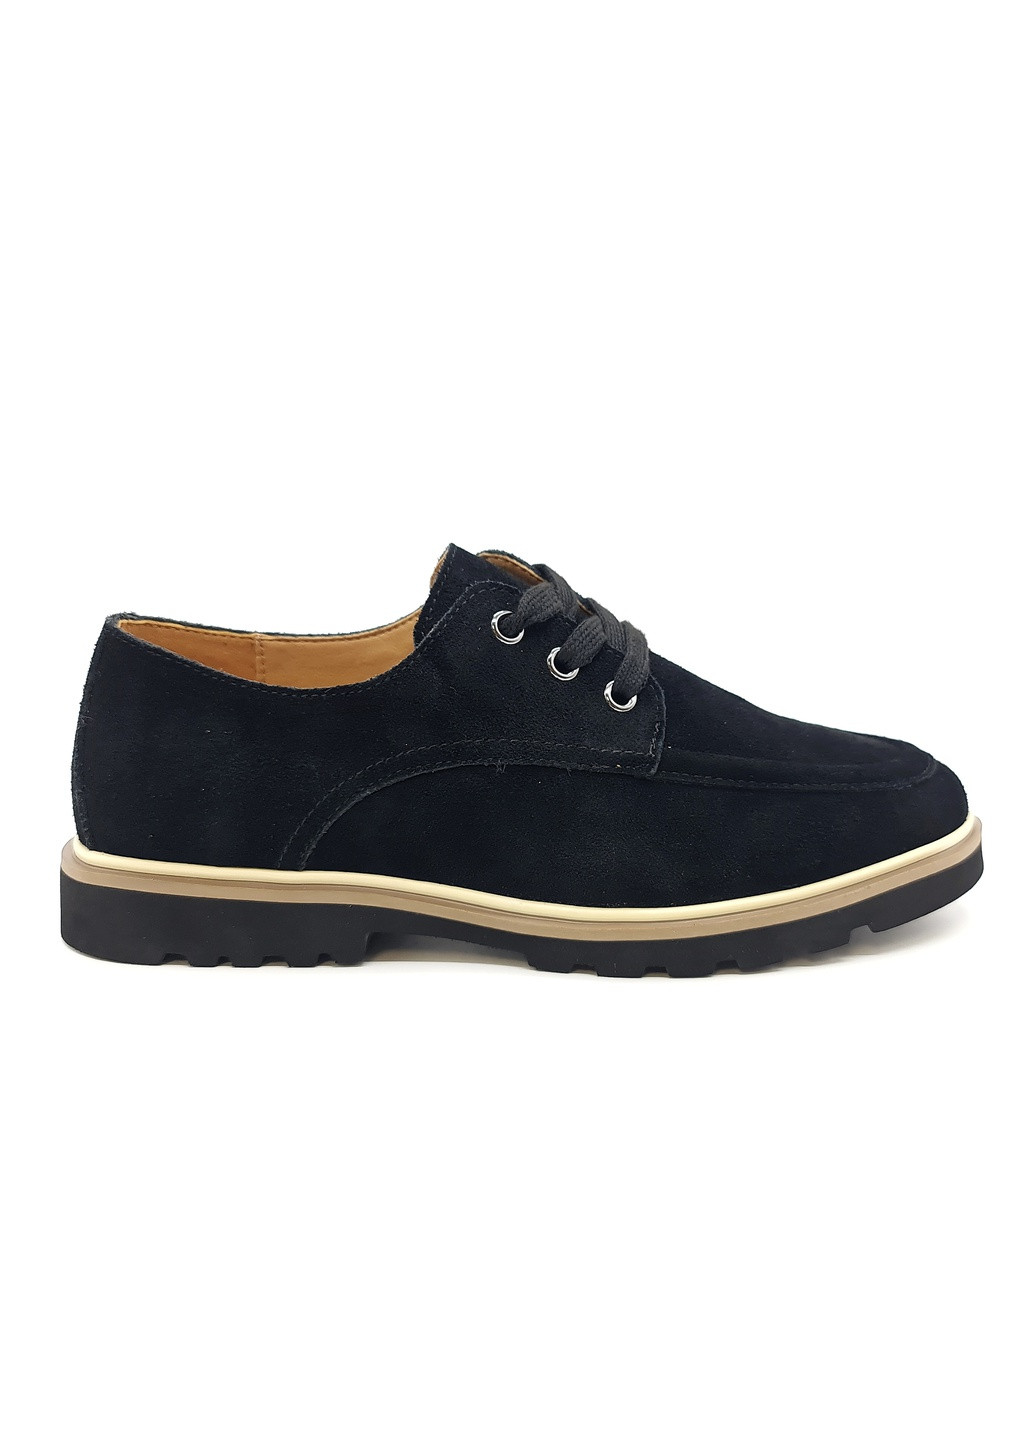 Жіночі туфлі чорні замшеві L-10-3 24,5 см (р) Lonza (260010290)